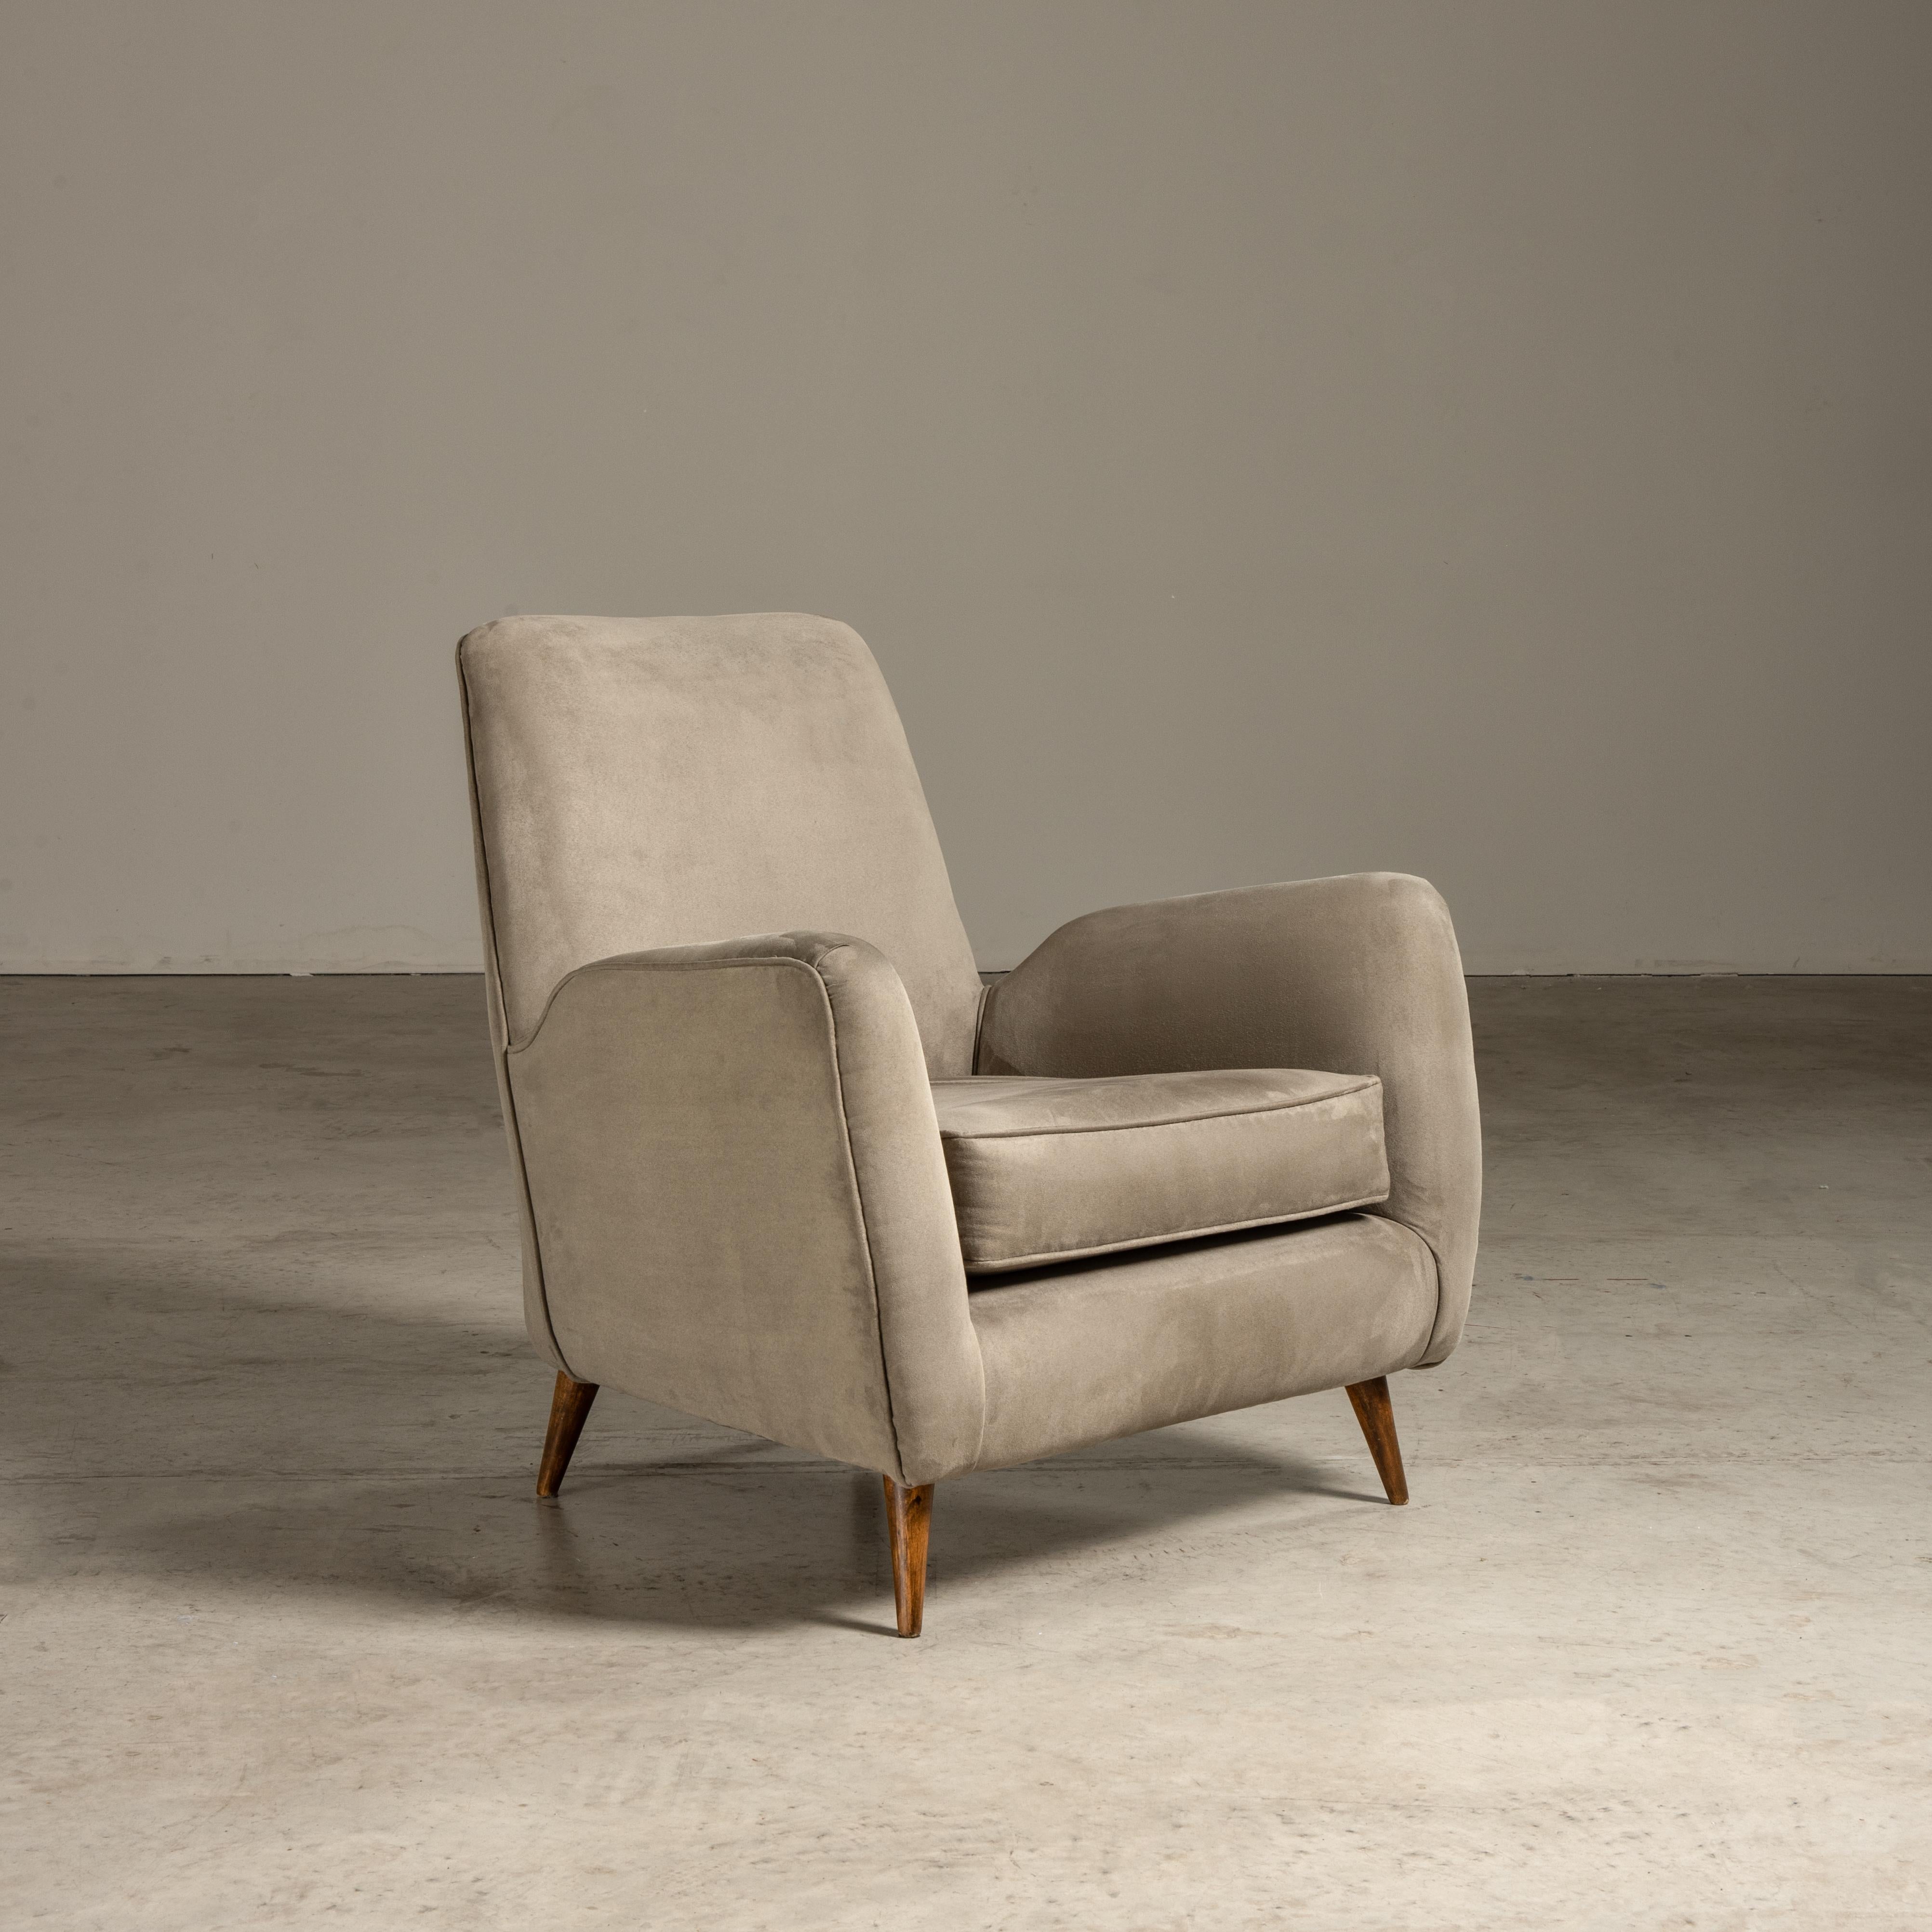 Dieser elegante Loungesessel, entworfen von Giuseppe Scapinelli, ist ein exquisites modernes Möbelstück aus der Mitte des 20. Jahrhunderts, das die elegante Verbindung von Stoff und Holz zur Geltung bringt. Dieser Sessel ist ein Beispiel für das